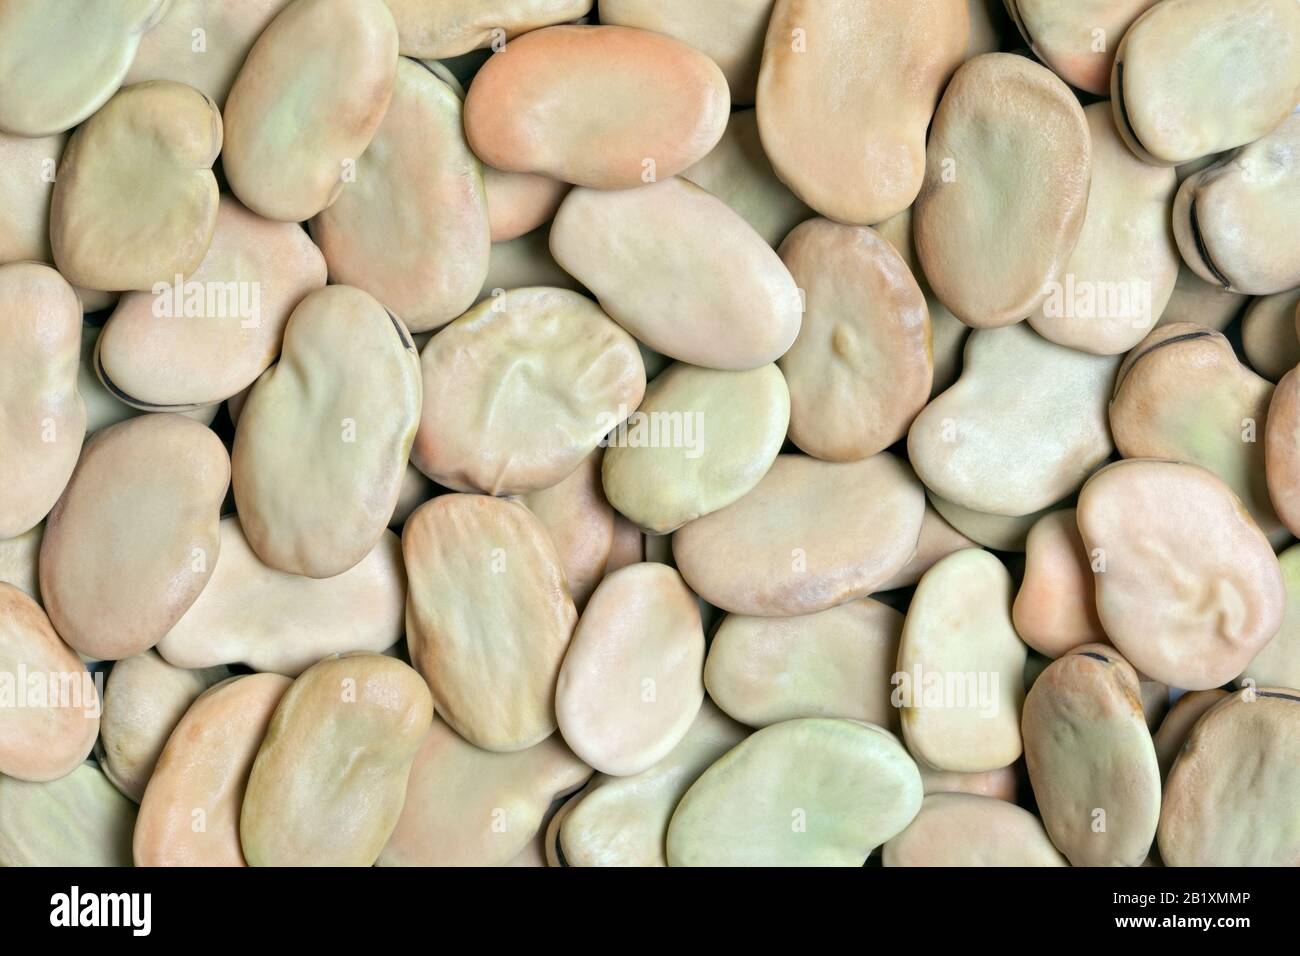 Hintergrund mit breiter Beans-Textur. Auch Fava oder Windsor Bean genannt. Riesige, kräftige Bohnen mit cremiger Textur; nussiger, süßer, erdiger Geschmack. Stockfoto